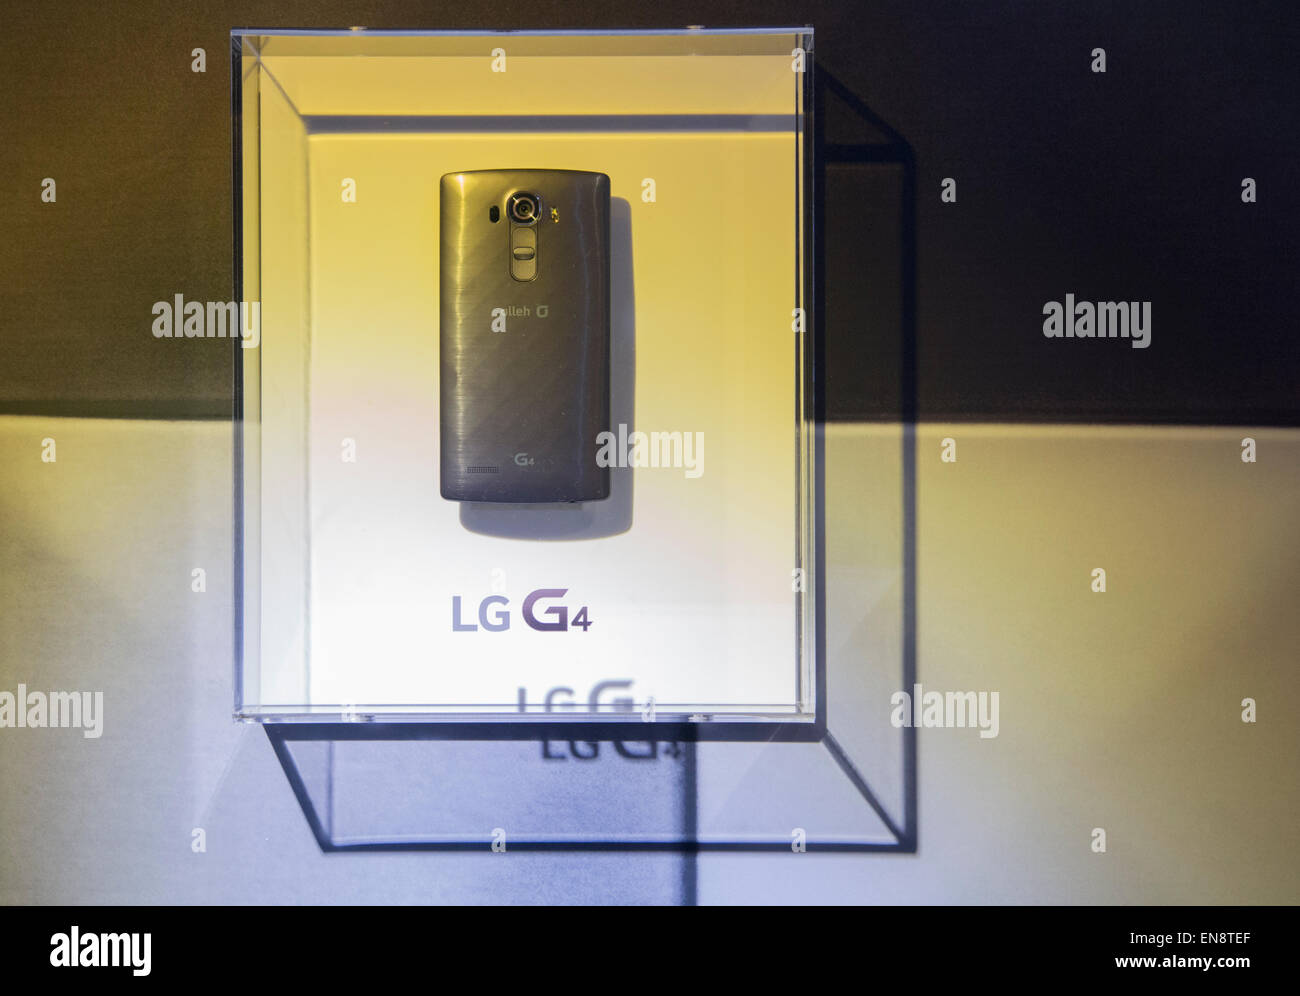 Séoul, Corée du Sud. 29 avril, 2015. LG Electronics G4 smartphone est affiché dans Séoul, Corée du Sud. LG a présenté son nouveau G4 le mercredi, c'est équipé de 5,5 pouces IPS (in-plane switching) QHD écran, un processeur Qualcomm Snapdragon 808 avec X10 et une F LTE 1.8 Objectif de l'appareil. Le nouveau smartphone fonctionne sur Google Android 5.1 Lollipop et ses prix local est d'environ 770 $US, selon les médias locaux. Credit : Lee Jae-Won/AFLO/Alamy Live News Banque D'Images